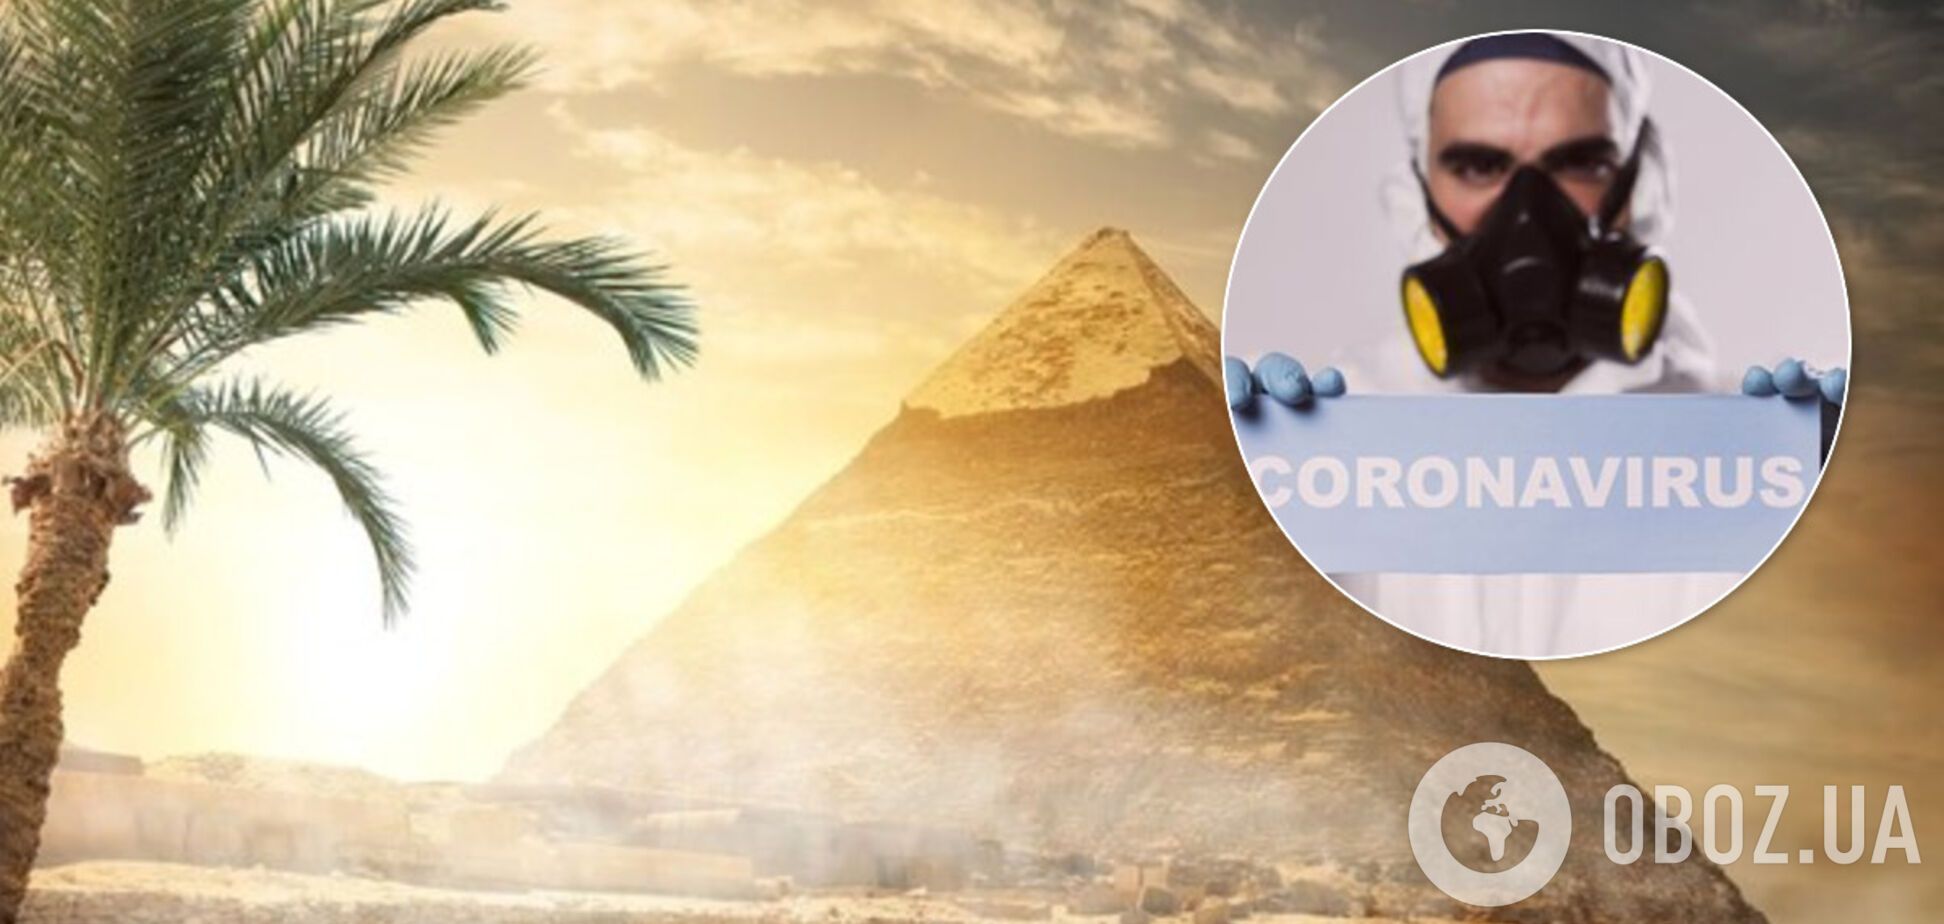 В Египте ввели новые правила для туристов из-за коронавируса: что изменилось